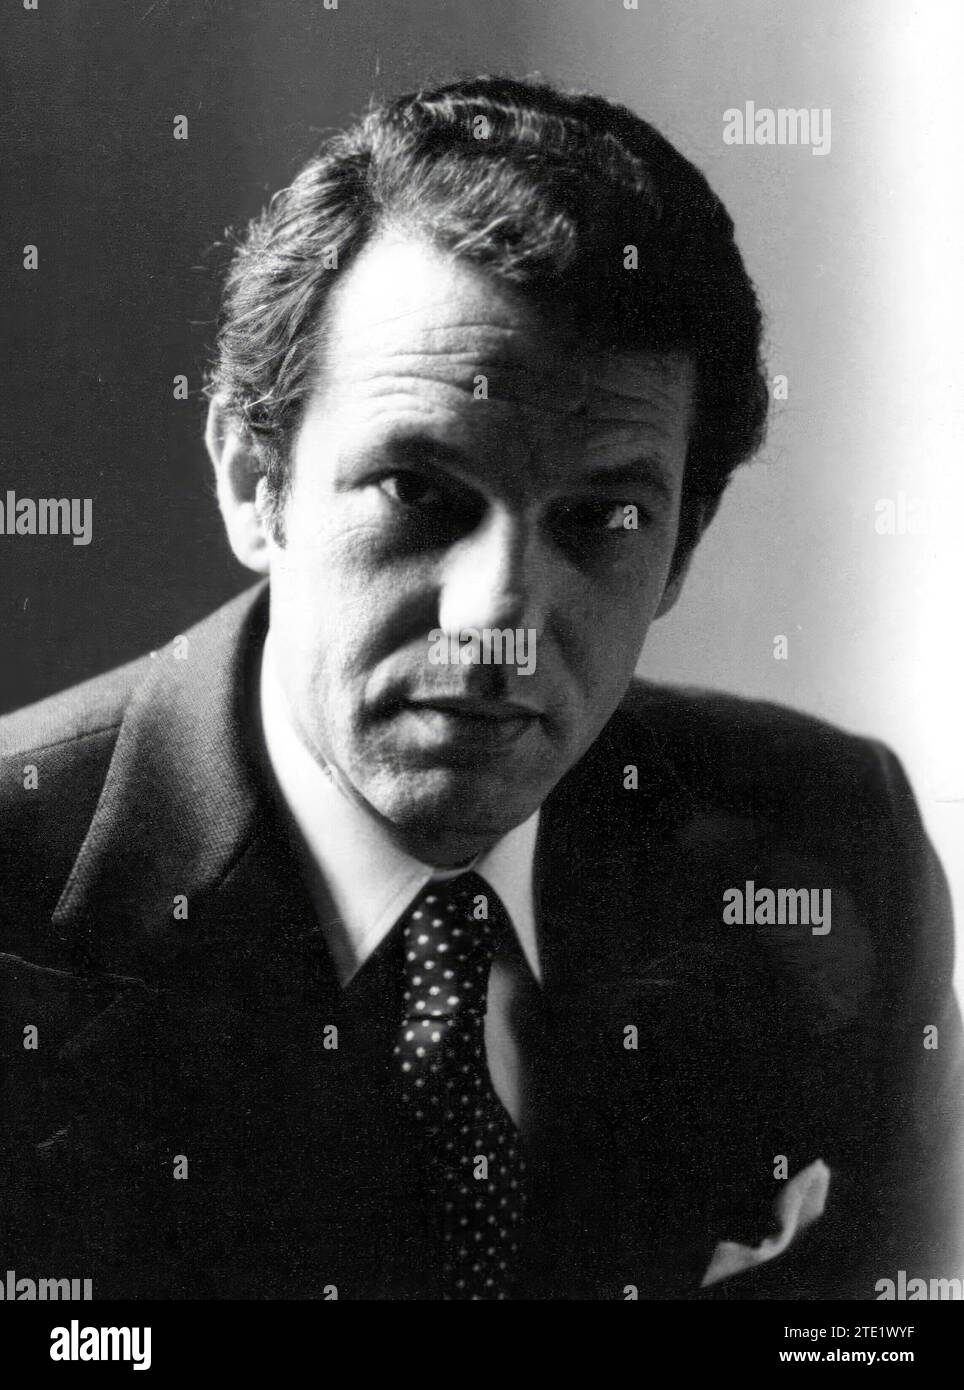 12/31/1977. Ritratto del giornalista Joaquín Navarro-Valls, corrispondente ABC a Roma. Crediti: Album / Archivo ABC Foto Stock